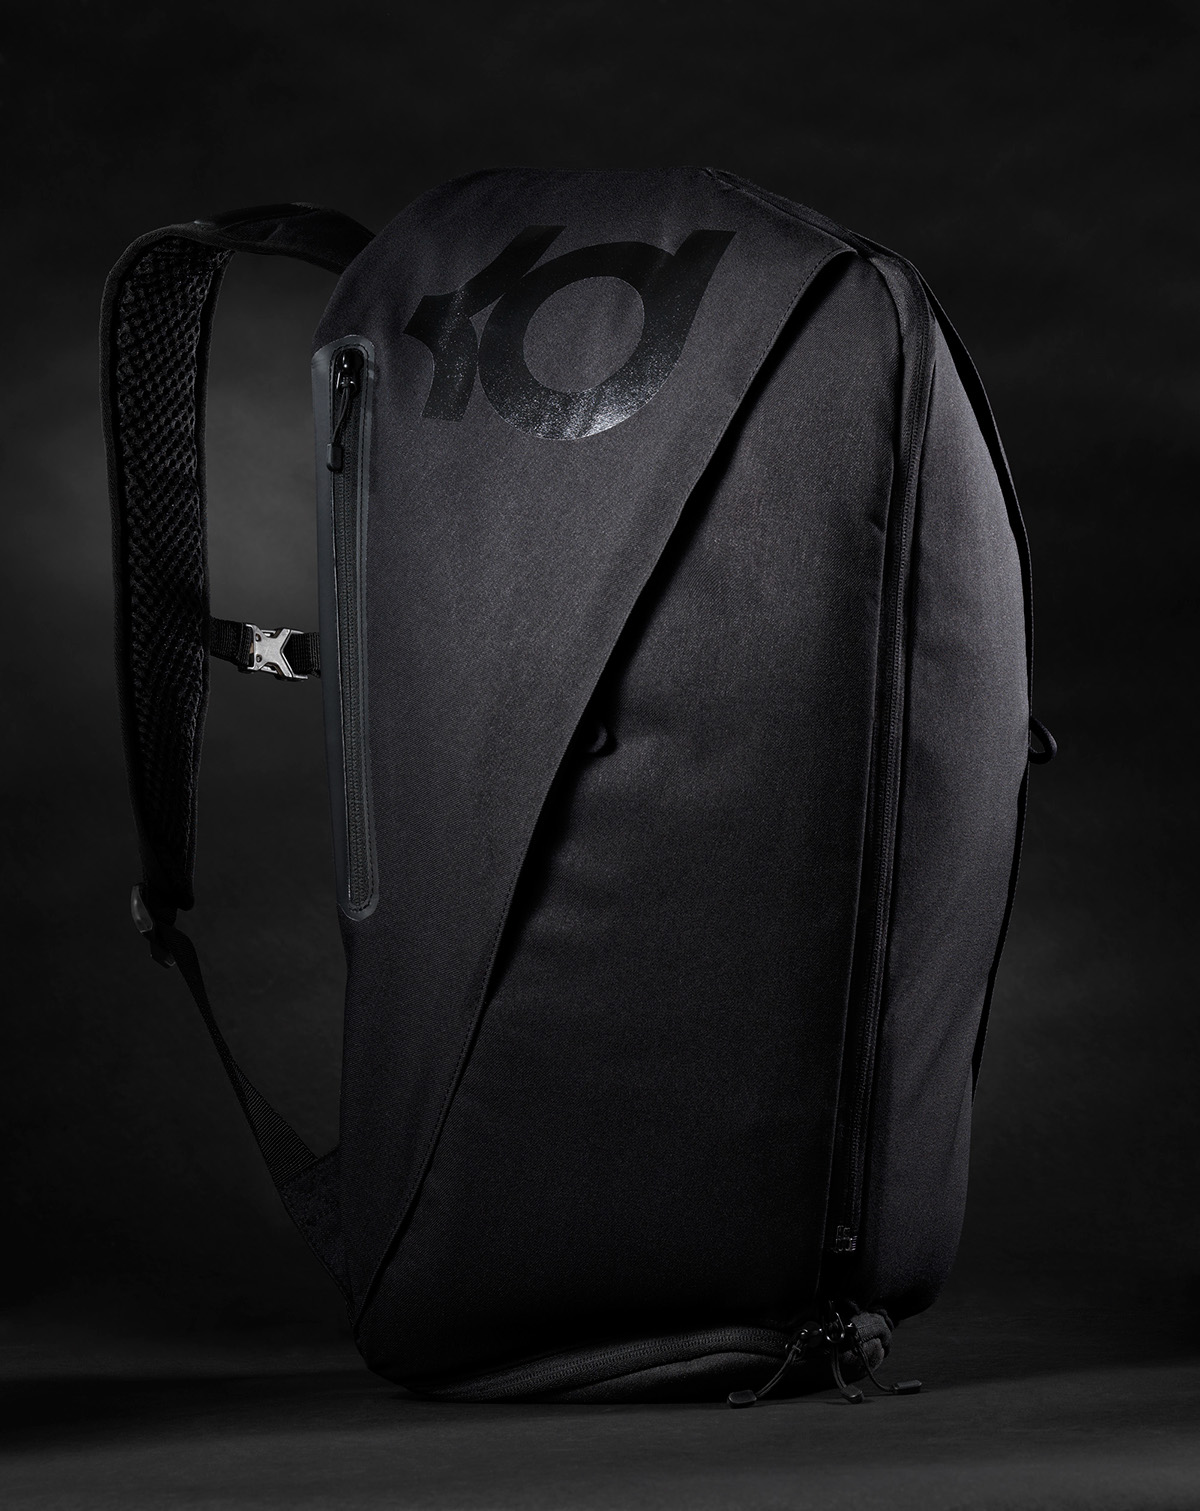 soft goods design bag design kevin durant Nike Backpack basketball backpack Backpack design backpack kd kd backpack